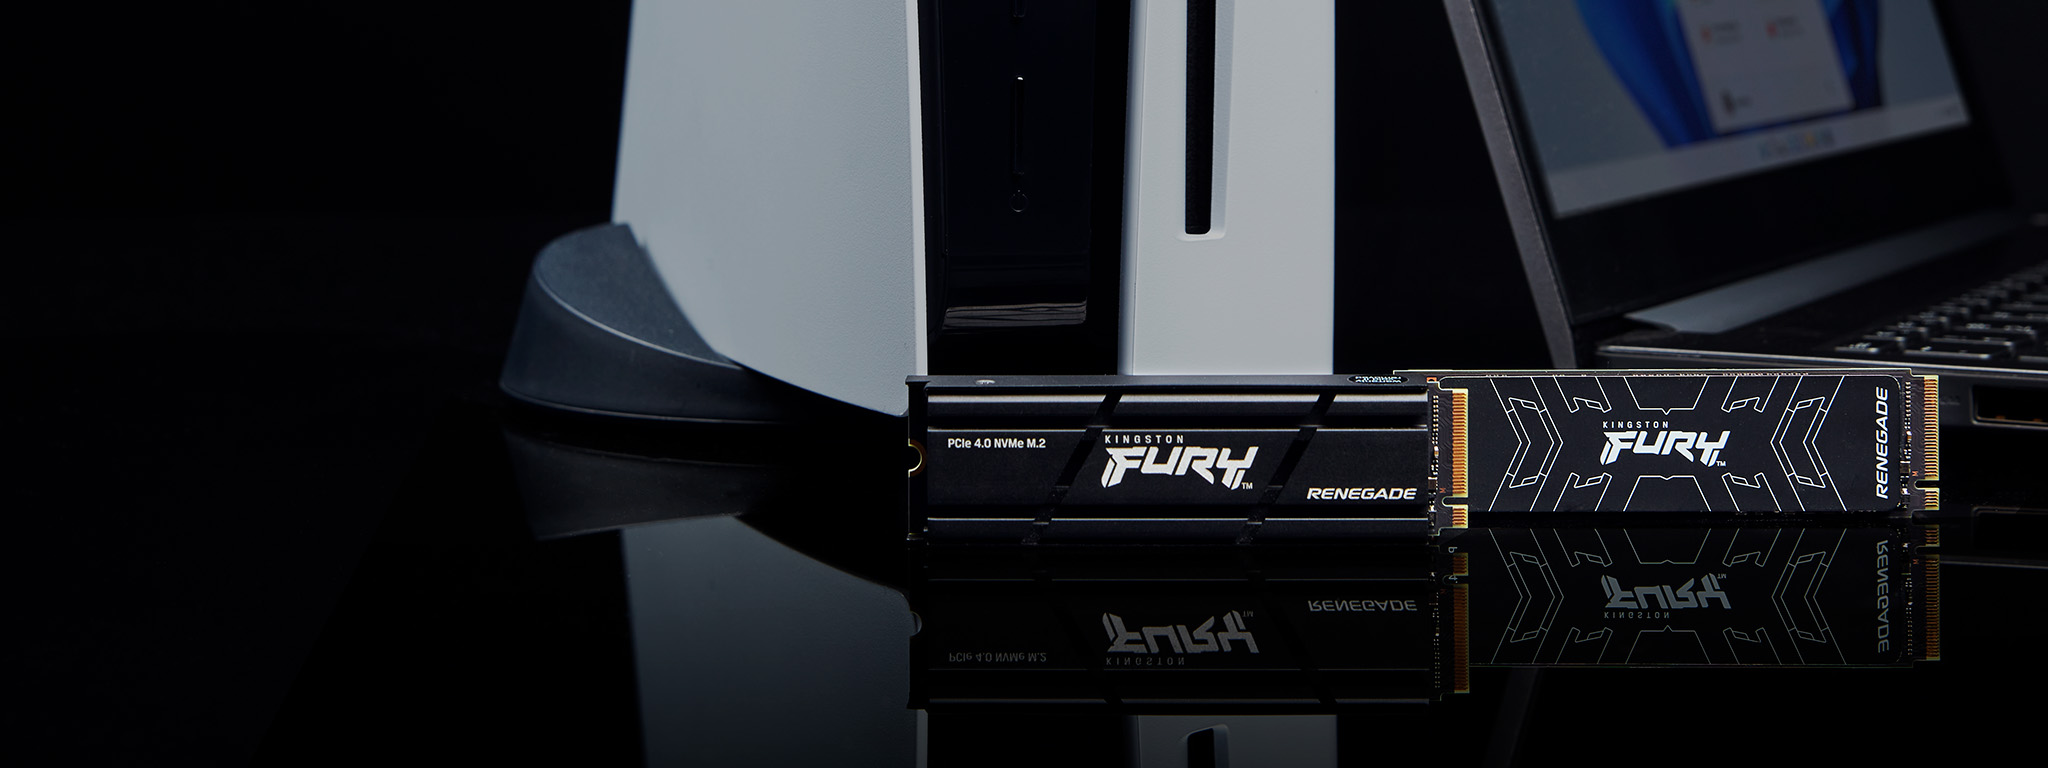 Два SSD-накопичувачі Kingston FURY Renegade, один із радіатором і один без нього, розташовані поруч із PS5 і ноутбуком.